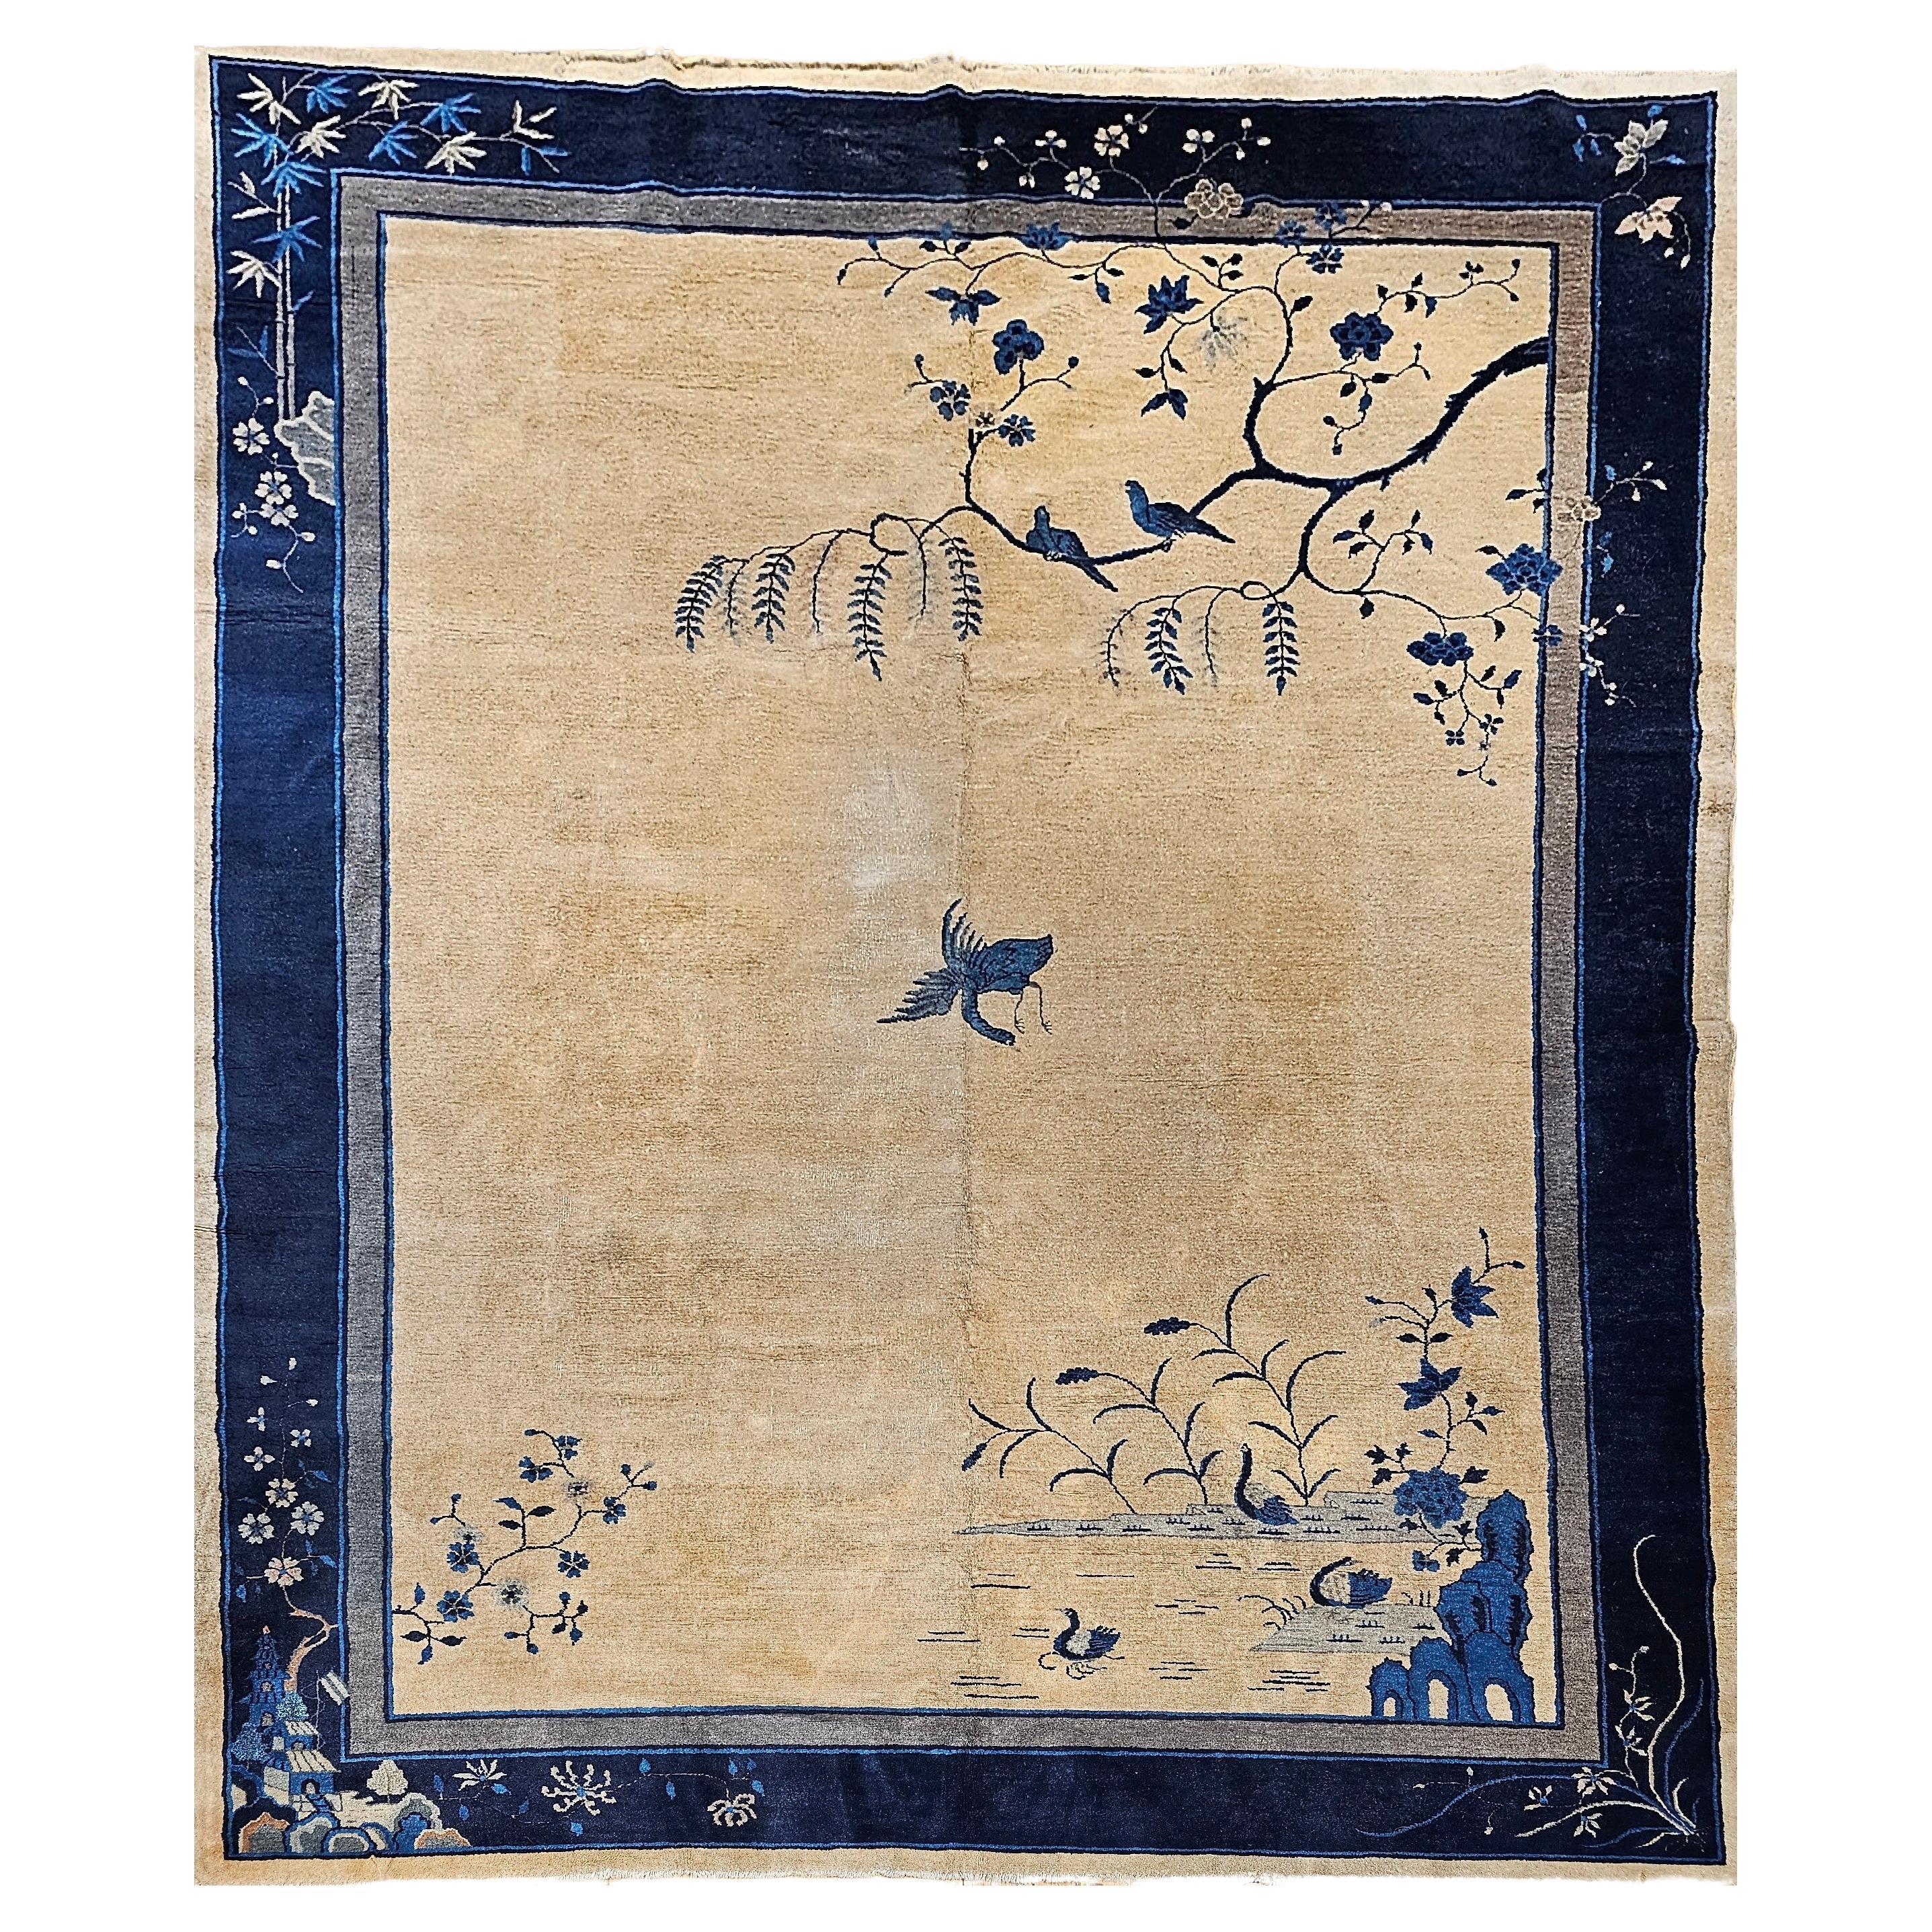 Chinesischer Art-Déco-Teppich im Vintage-Stil mit Kranichen, Pagoden, Bergen in Weizen, Blau, Marineblau, Vintage